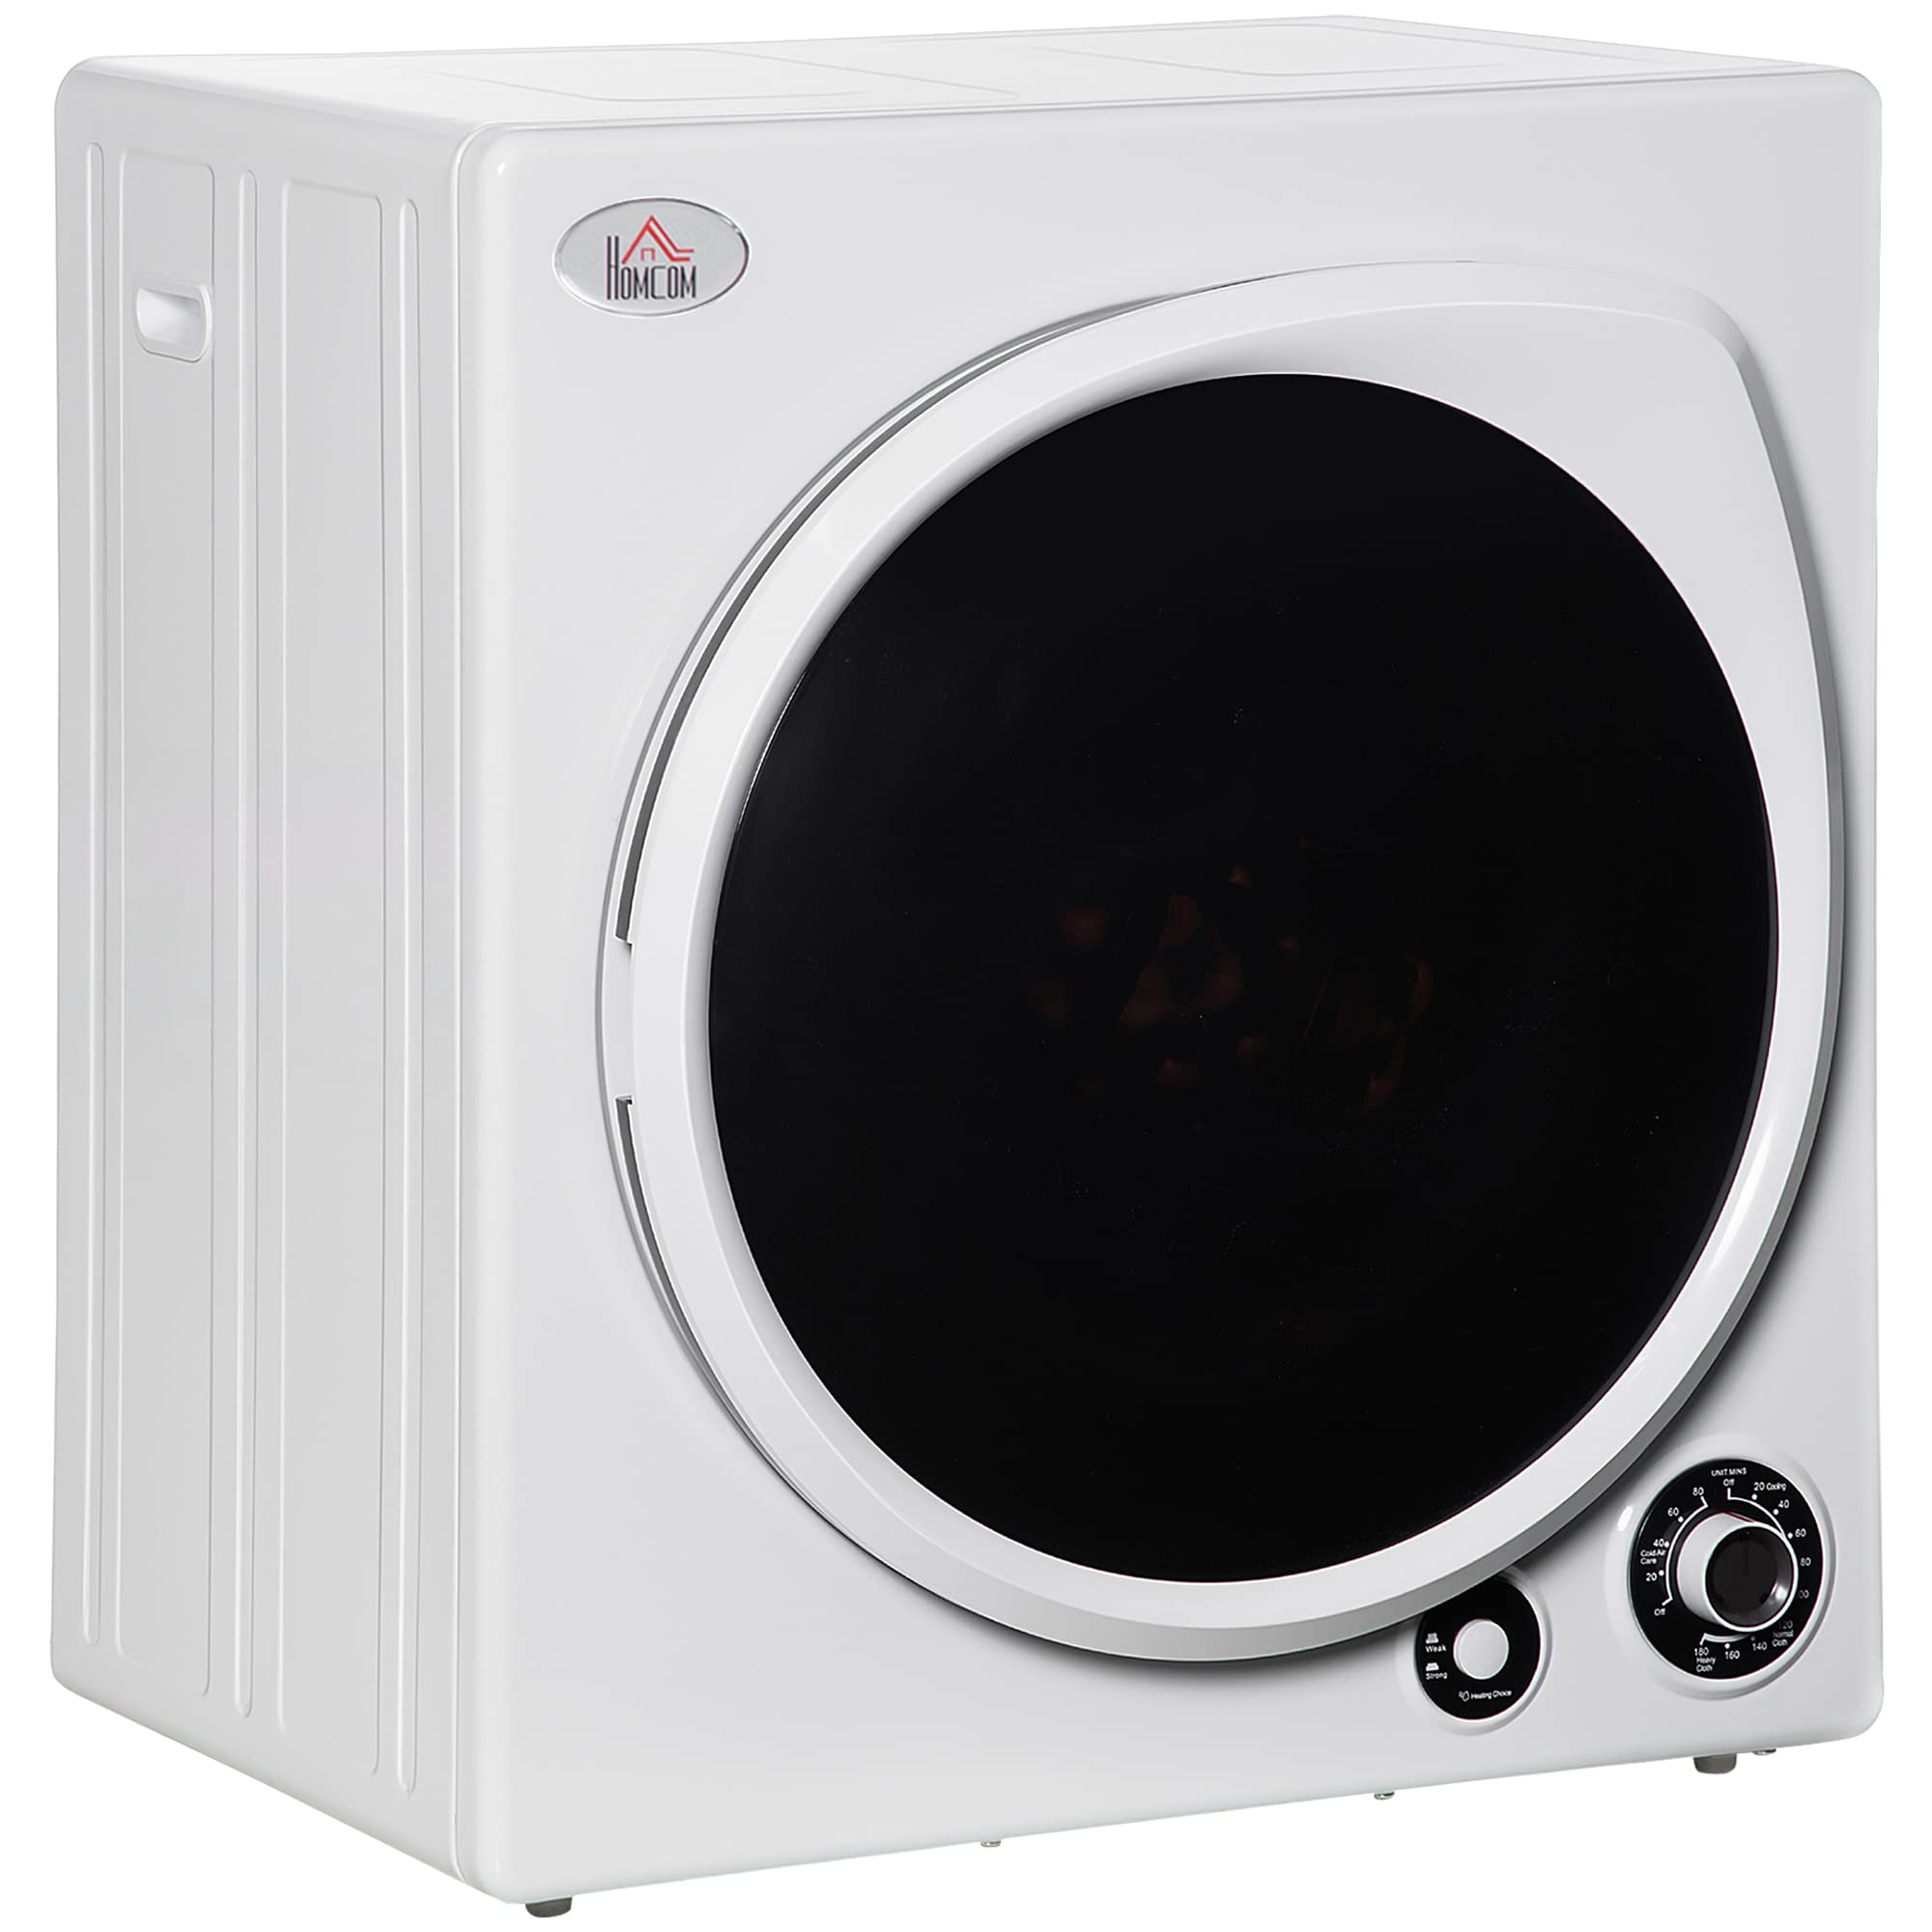 HomCom 自动烘干机，1350W 3.22 Cu。英尺。便携式干衣机，带 5 种烘干模式和不锈钢浴缸，适用于公寓或宿舍，白色